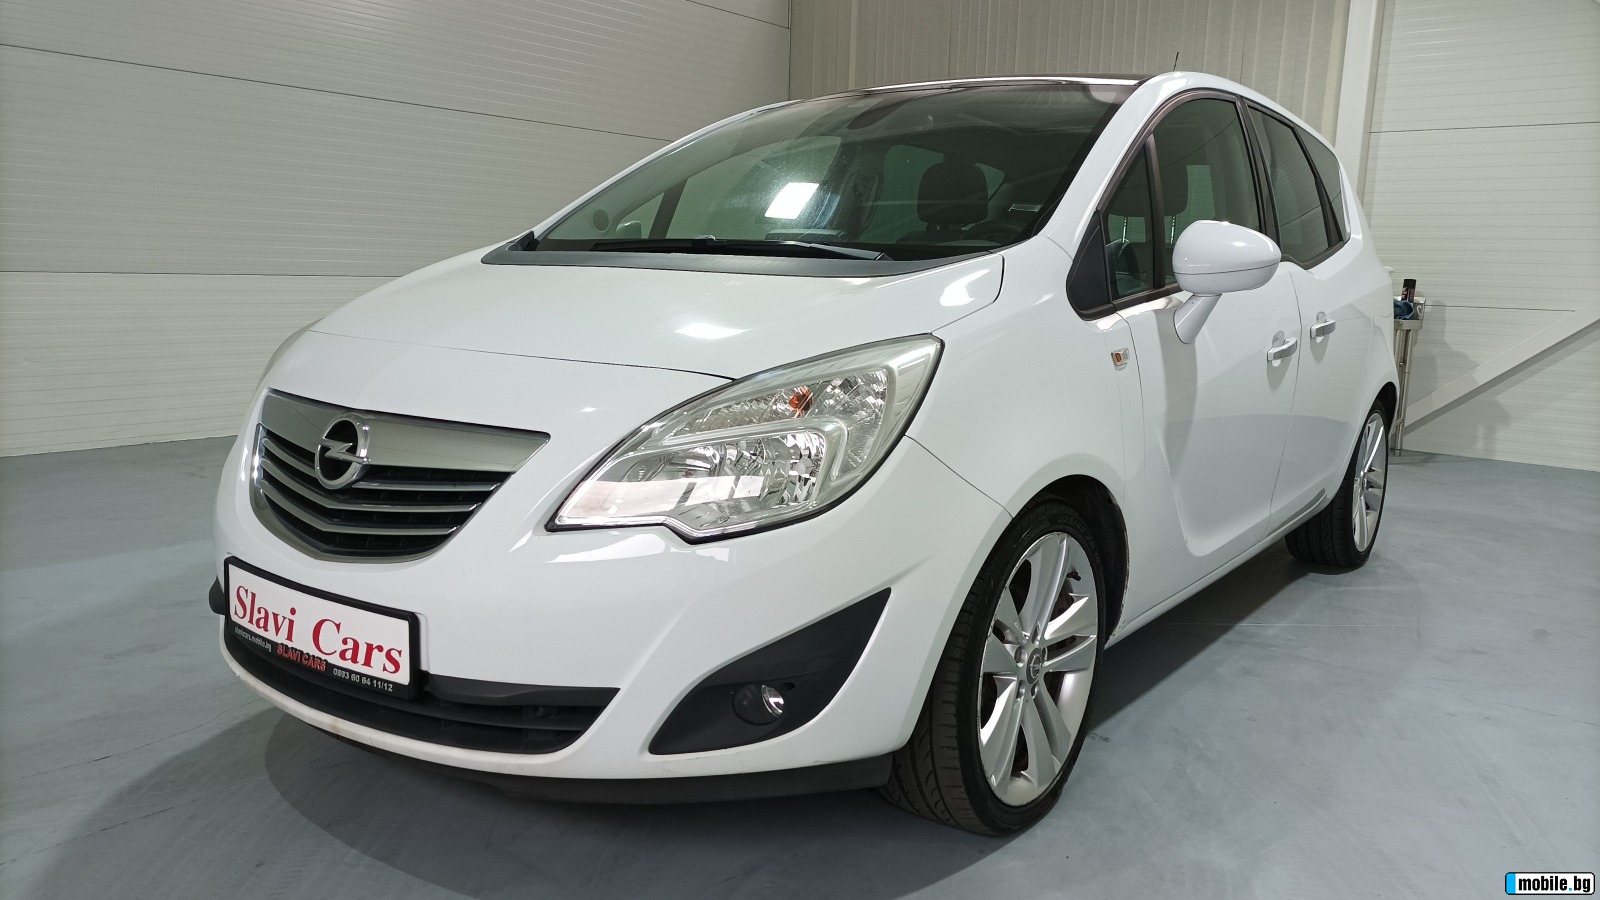 Opel Meriva 1.4 i turbo | Mobile.bg   1